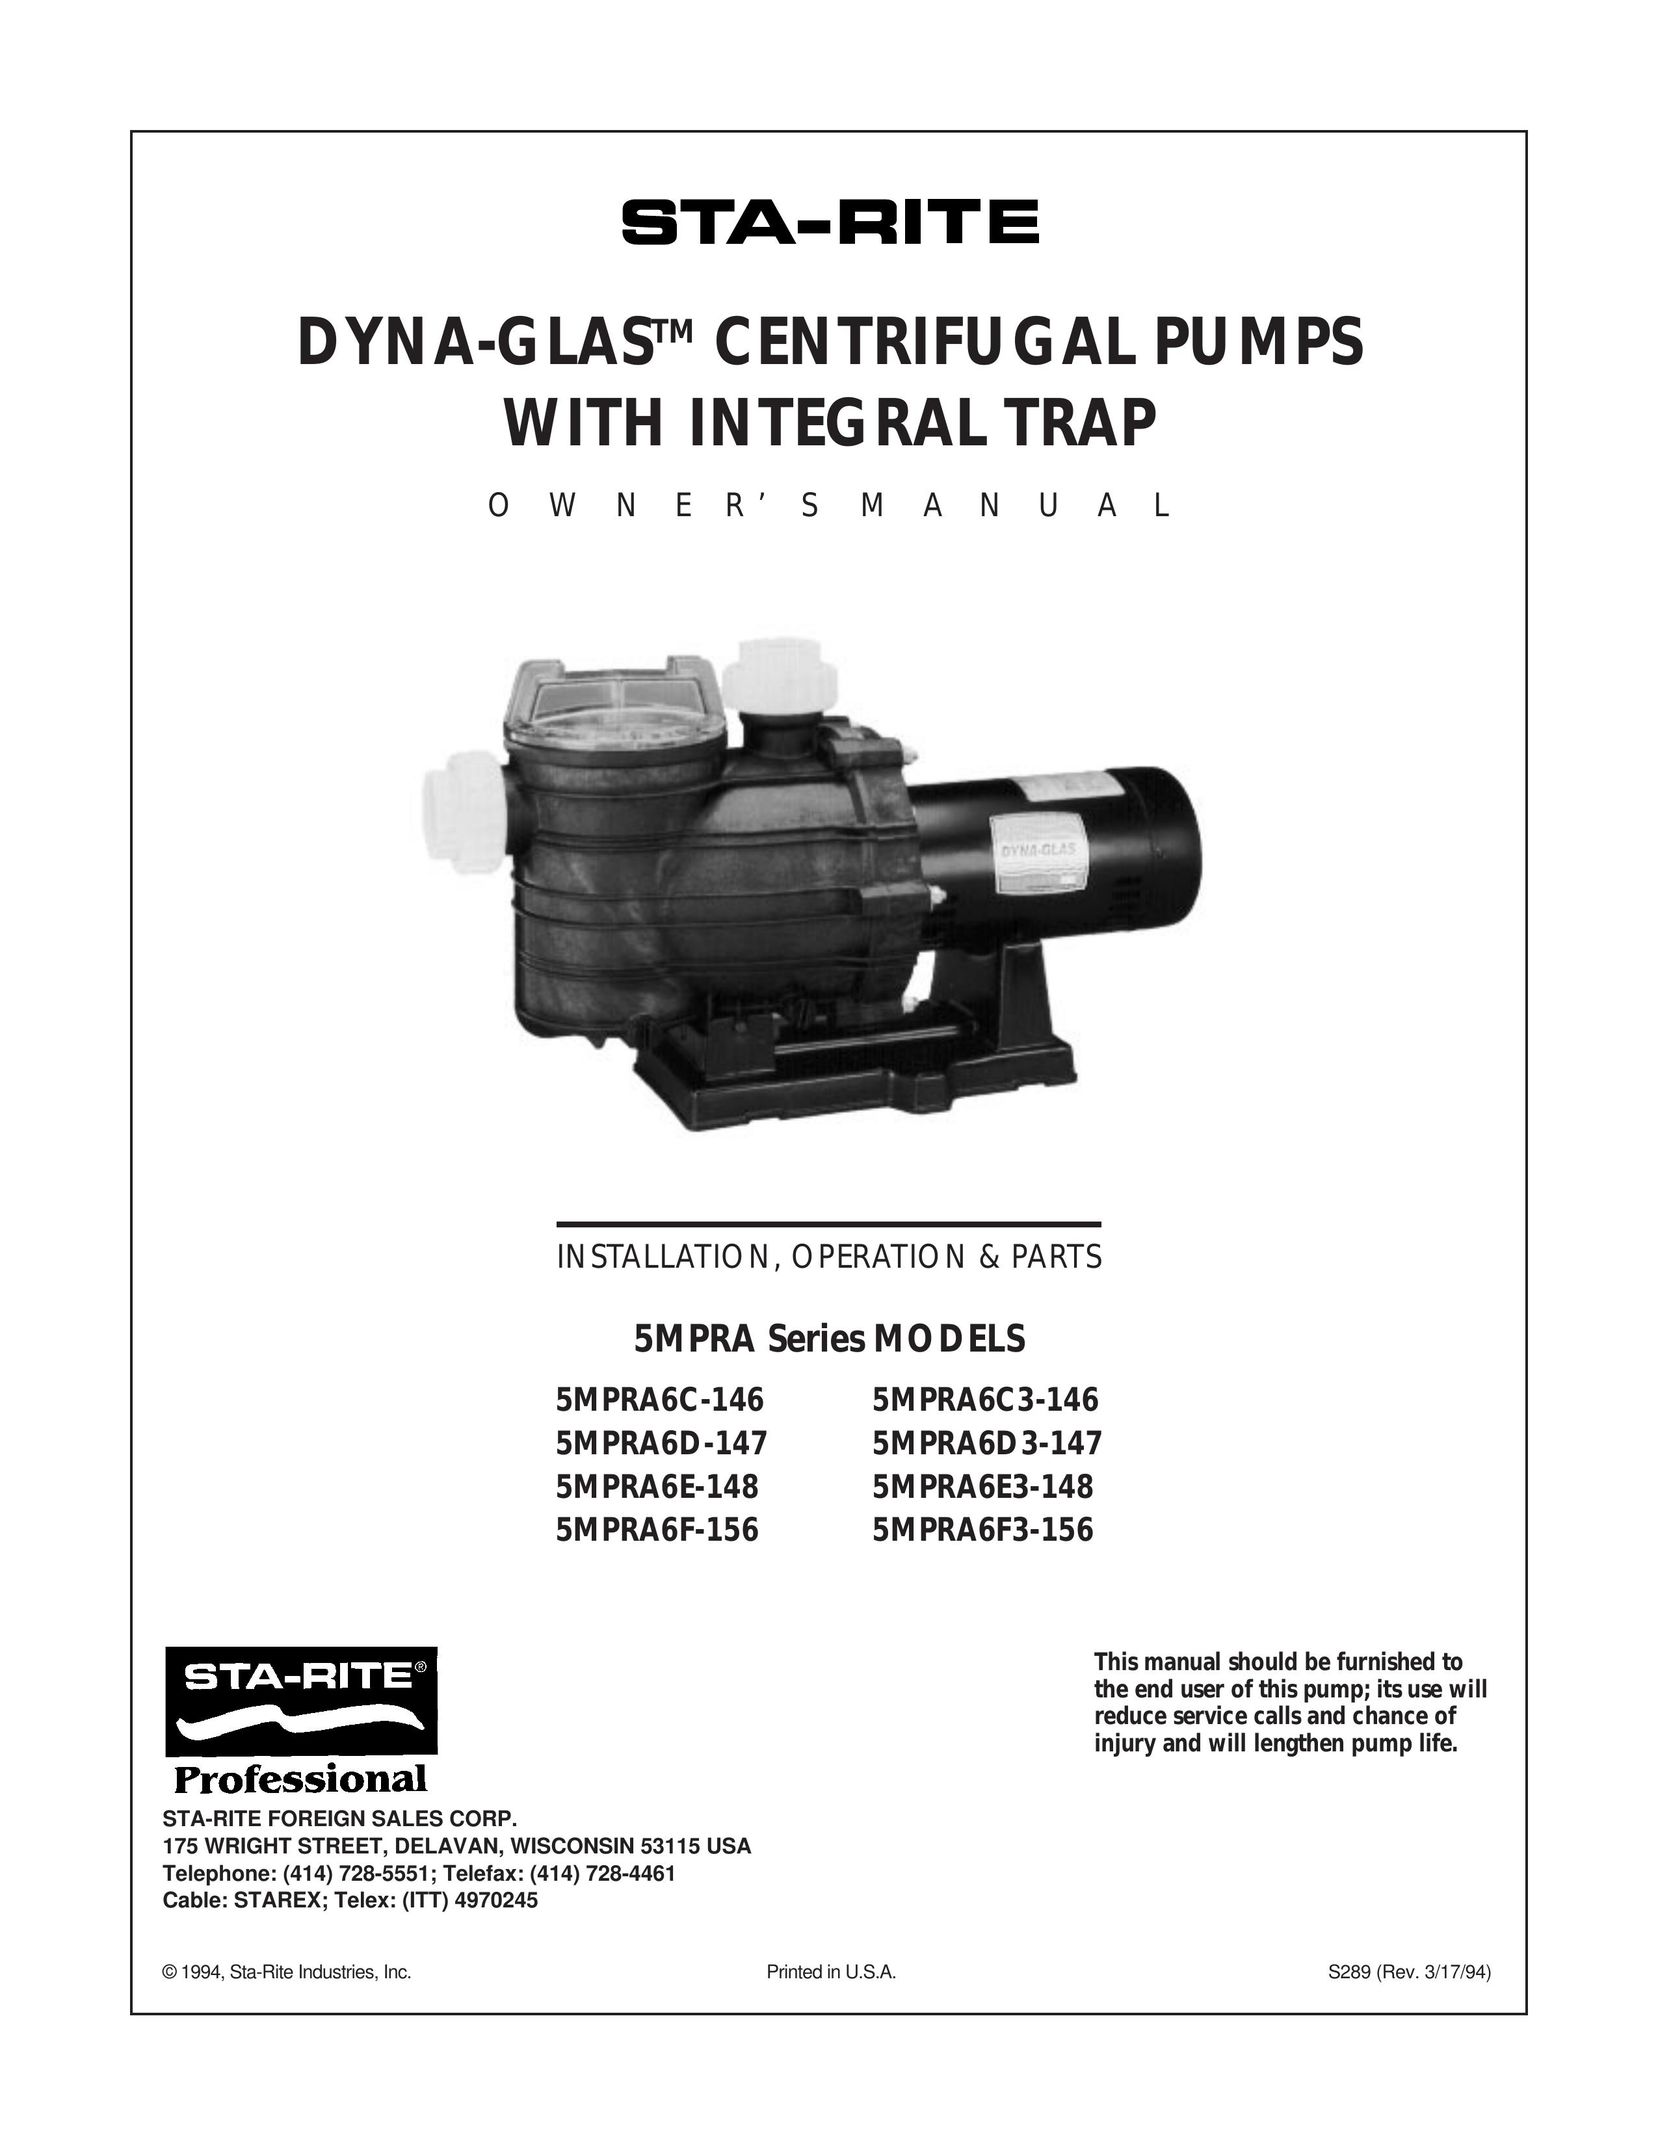 Mad Catz 5MPRA6E-148 Water Pump User Manual